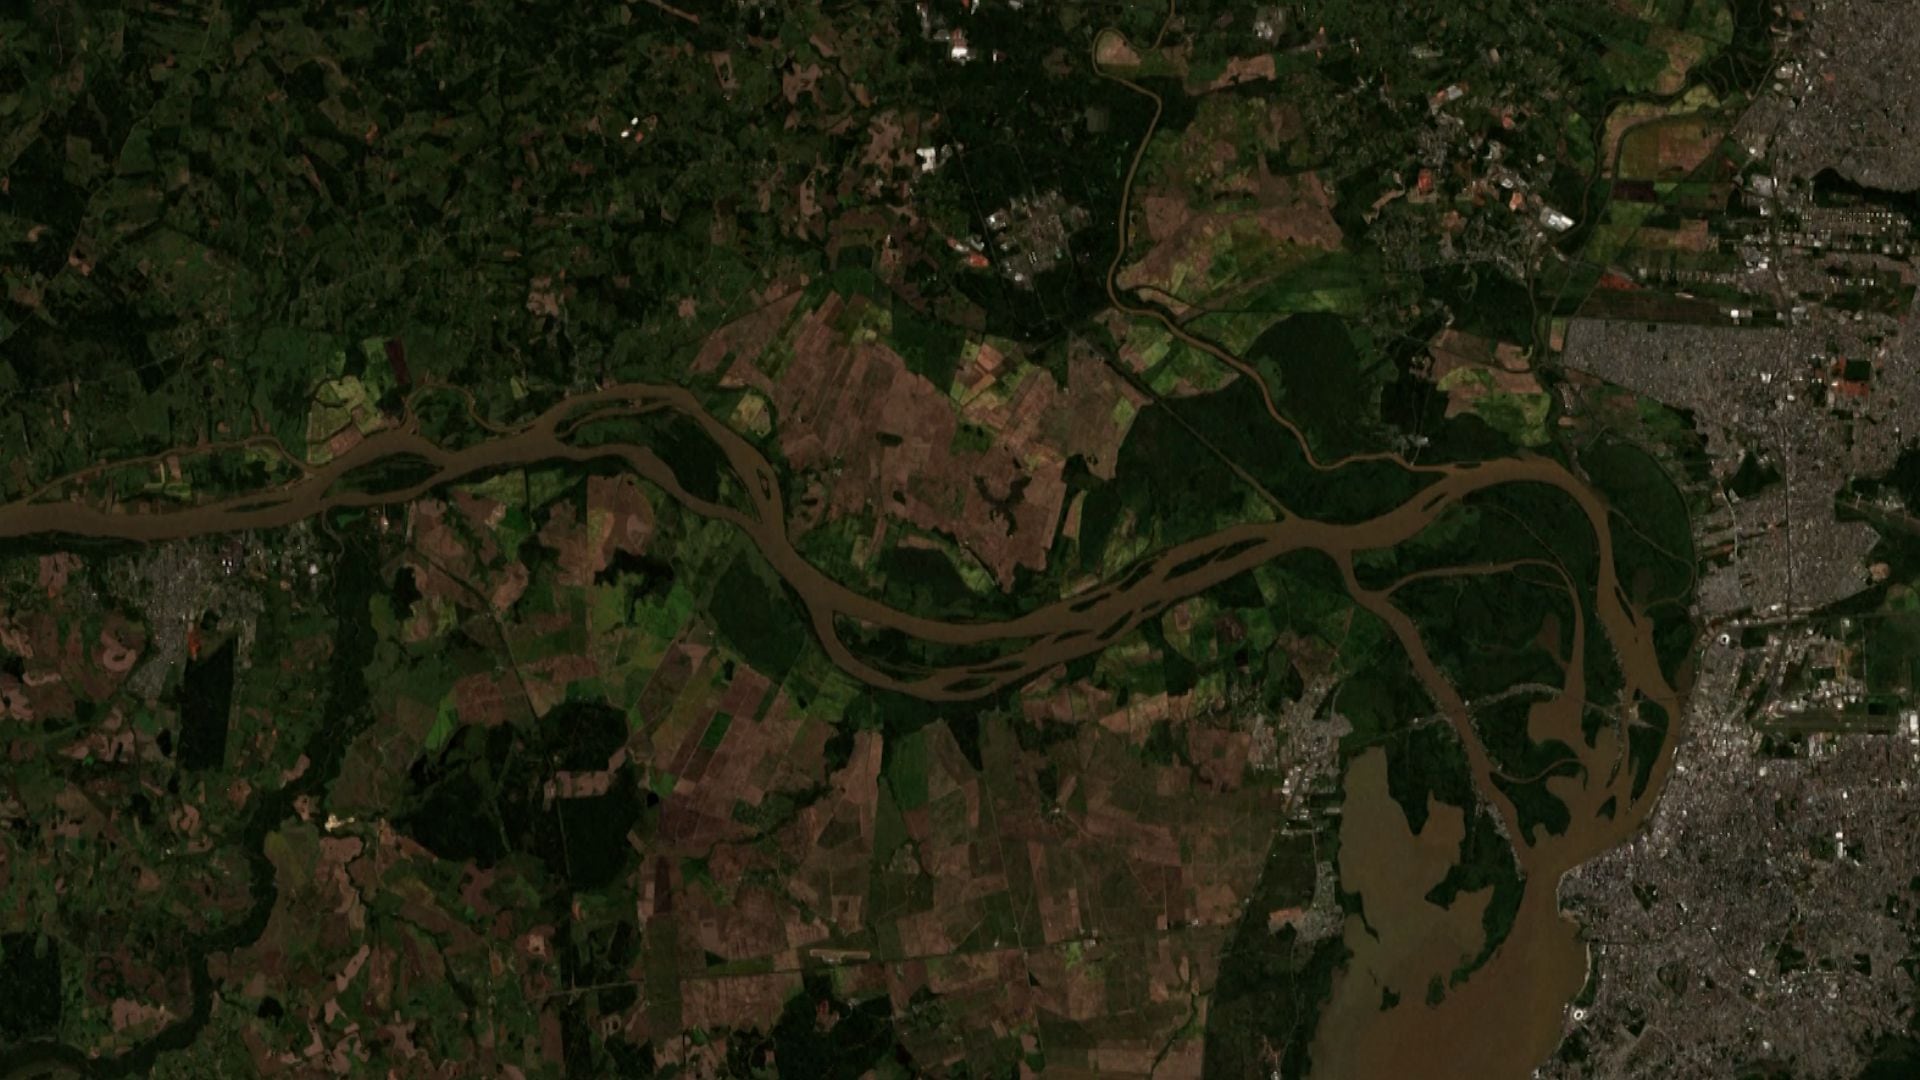 Las impactantes imágenes satelitales del antes y después de las inundaciones en el sur de Brasil